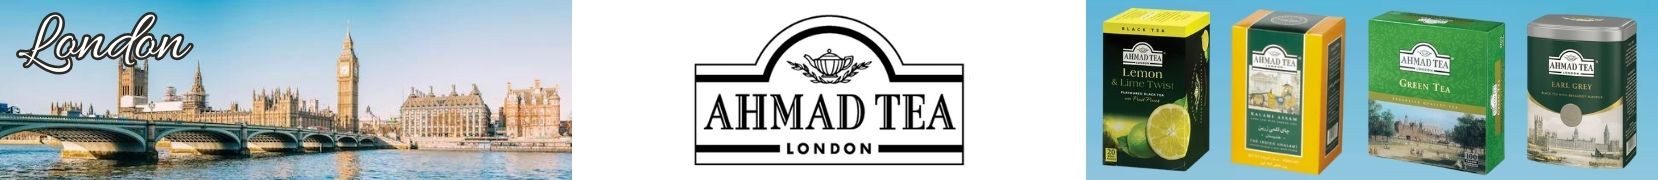 Ahmad Tea - London